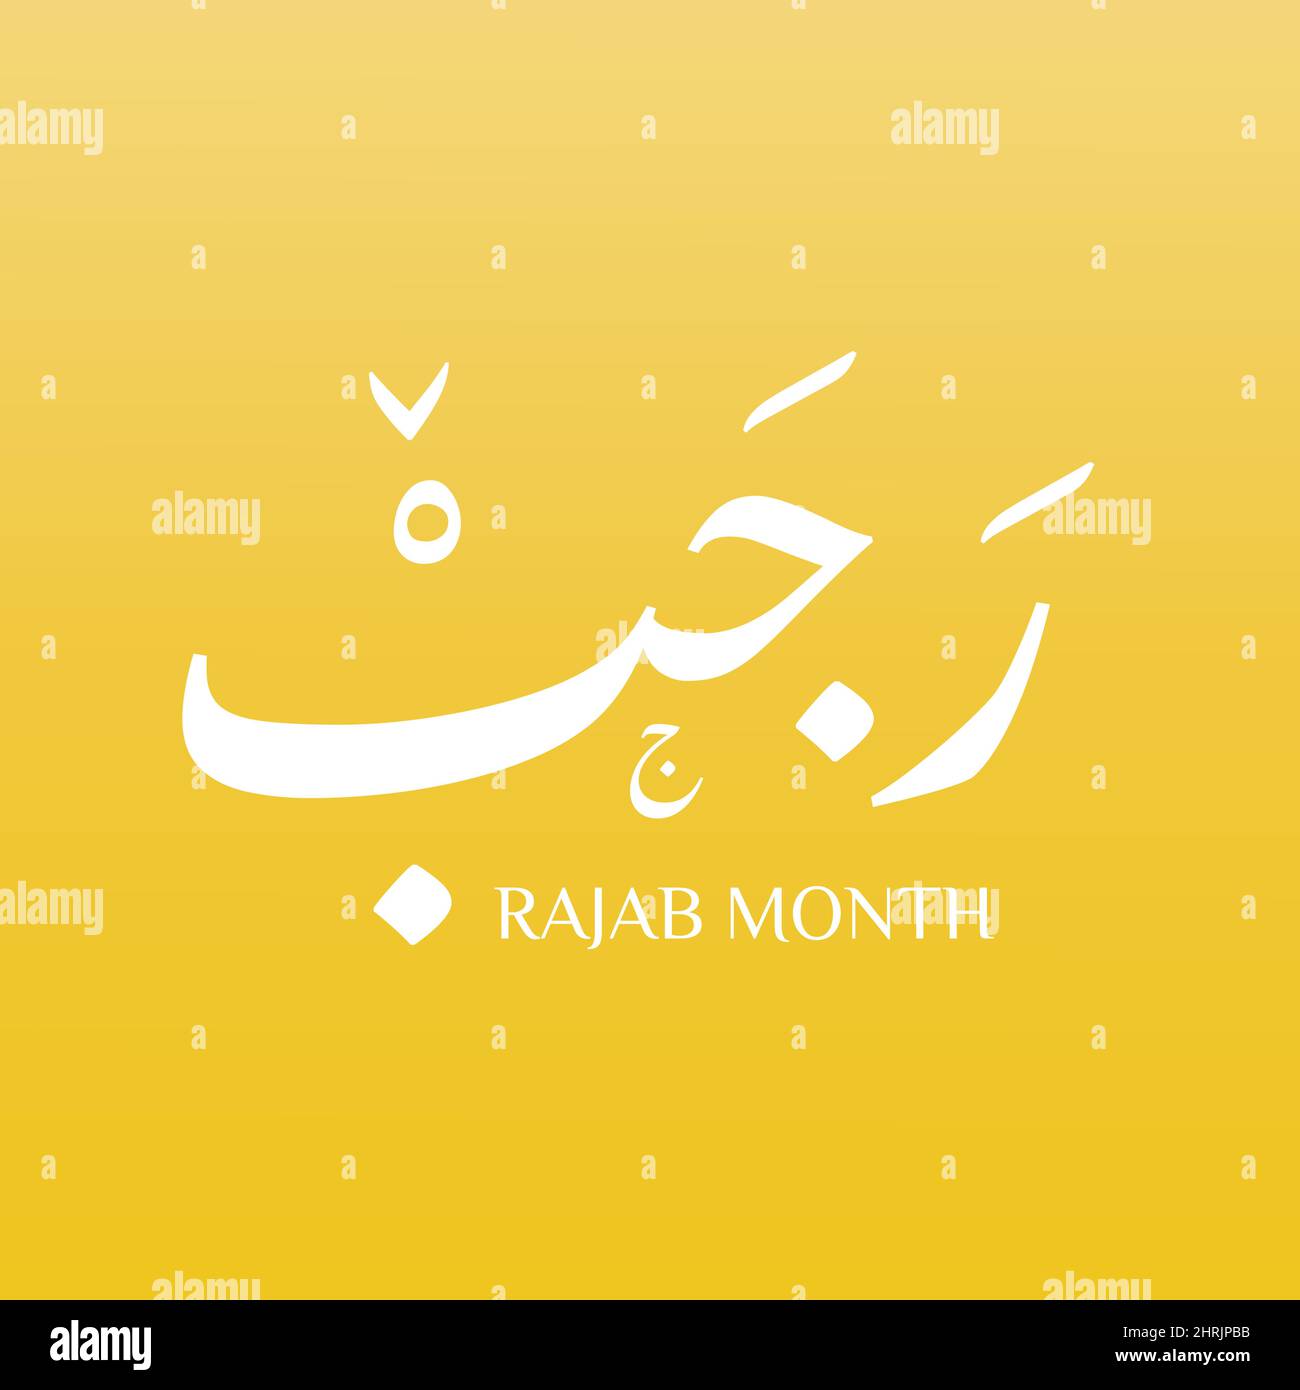 Rajab ist der siebte Monat des islamischen Kalenders. Die lexikalische Definition des klassischen arabischen Verbs rajaba lautet „Respekt“, was auch bedeuten könnte Stock Vektor